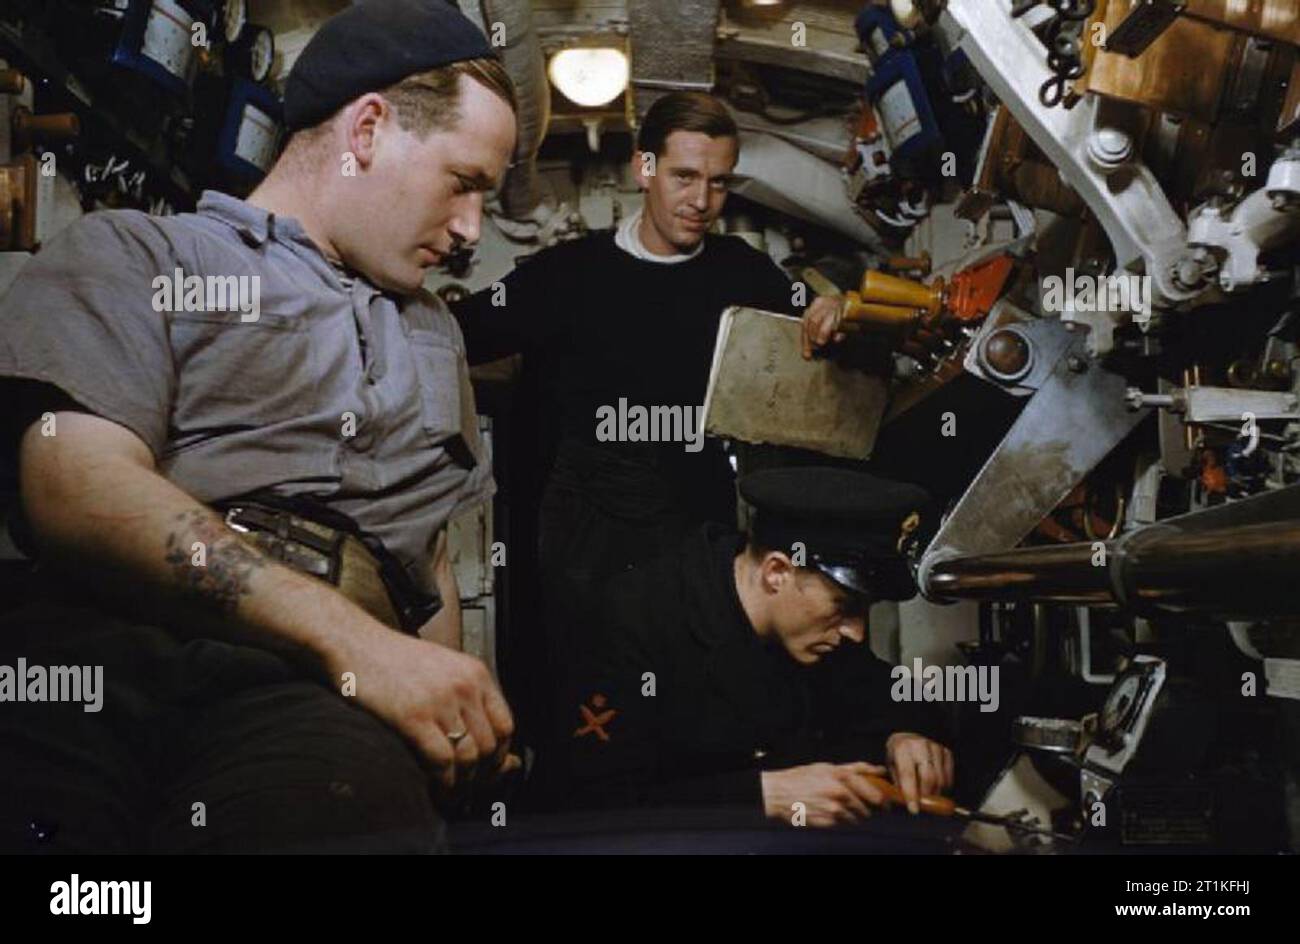 An Bord Hm-U-Boot Tribüne, 1942 eine Szene im Motor Zimmer von HMS-Tribüne. Die Abzeichen auf der Hülse der Petty Officer zeigt an, dass Er ist einer der führenden Torpedo Operator. Stockfoto